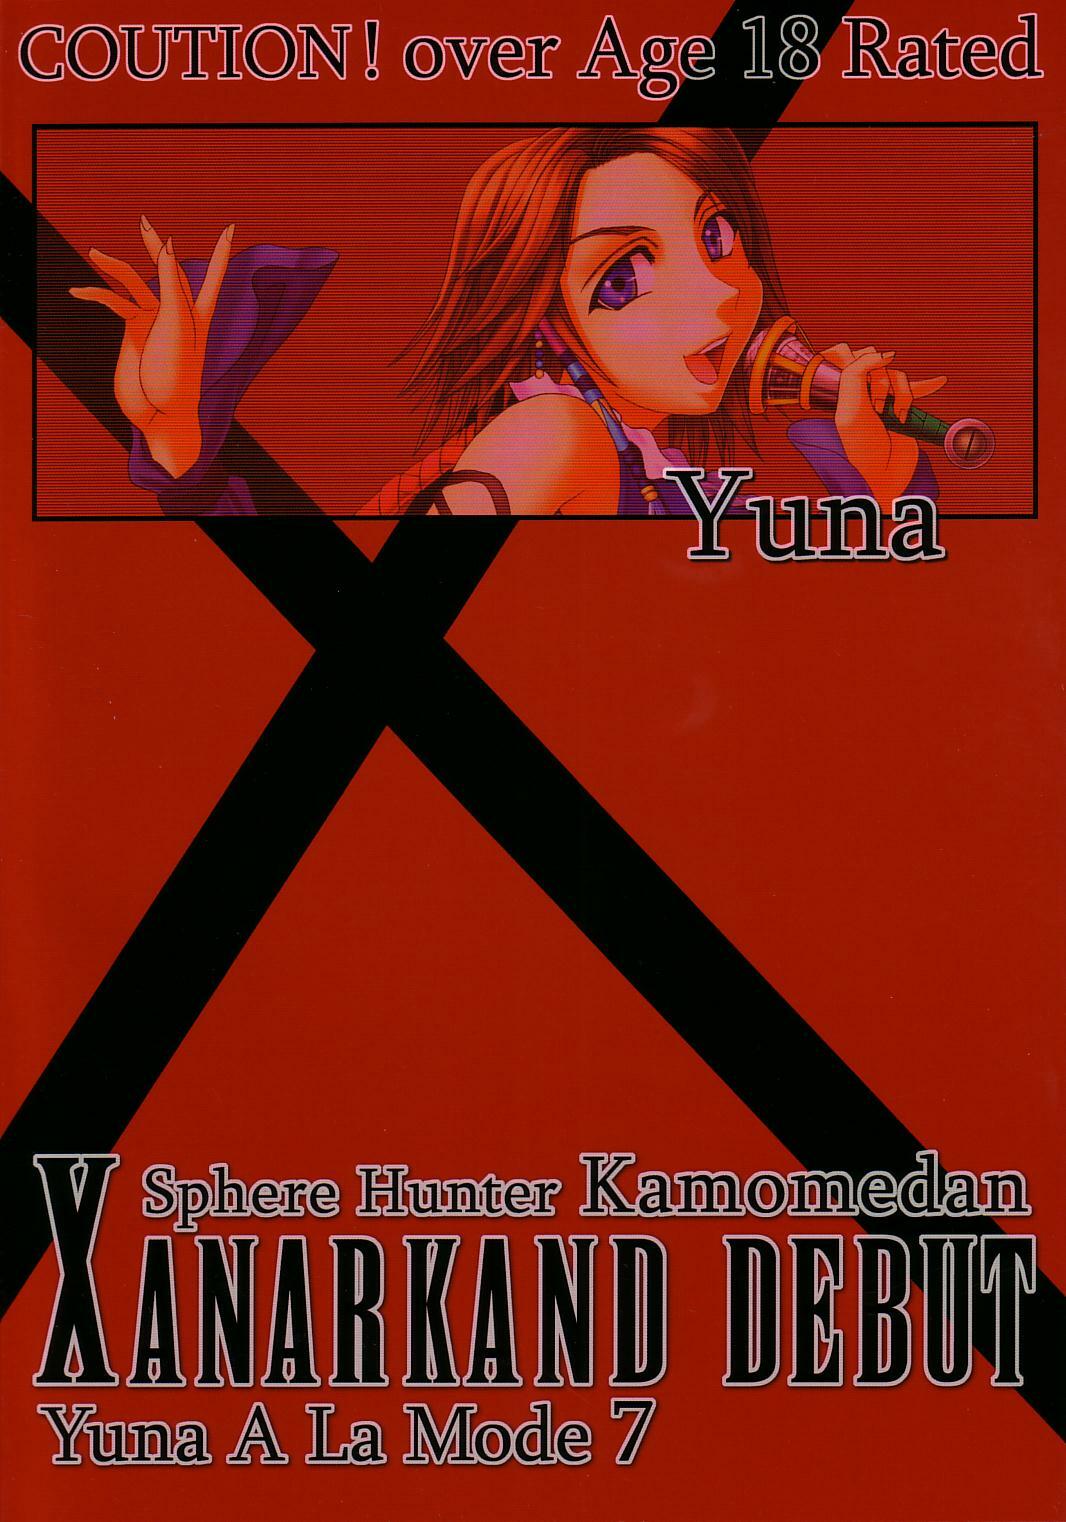 [St. Rio (Kitty, Tima)] Yuna A La Mode 7 Xanarkand Debut 3 (Final Fantasy X-2) page 58 full